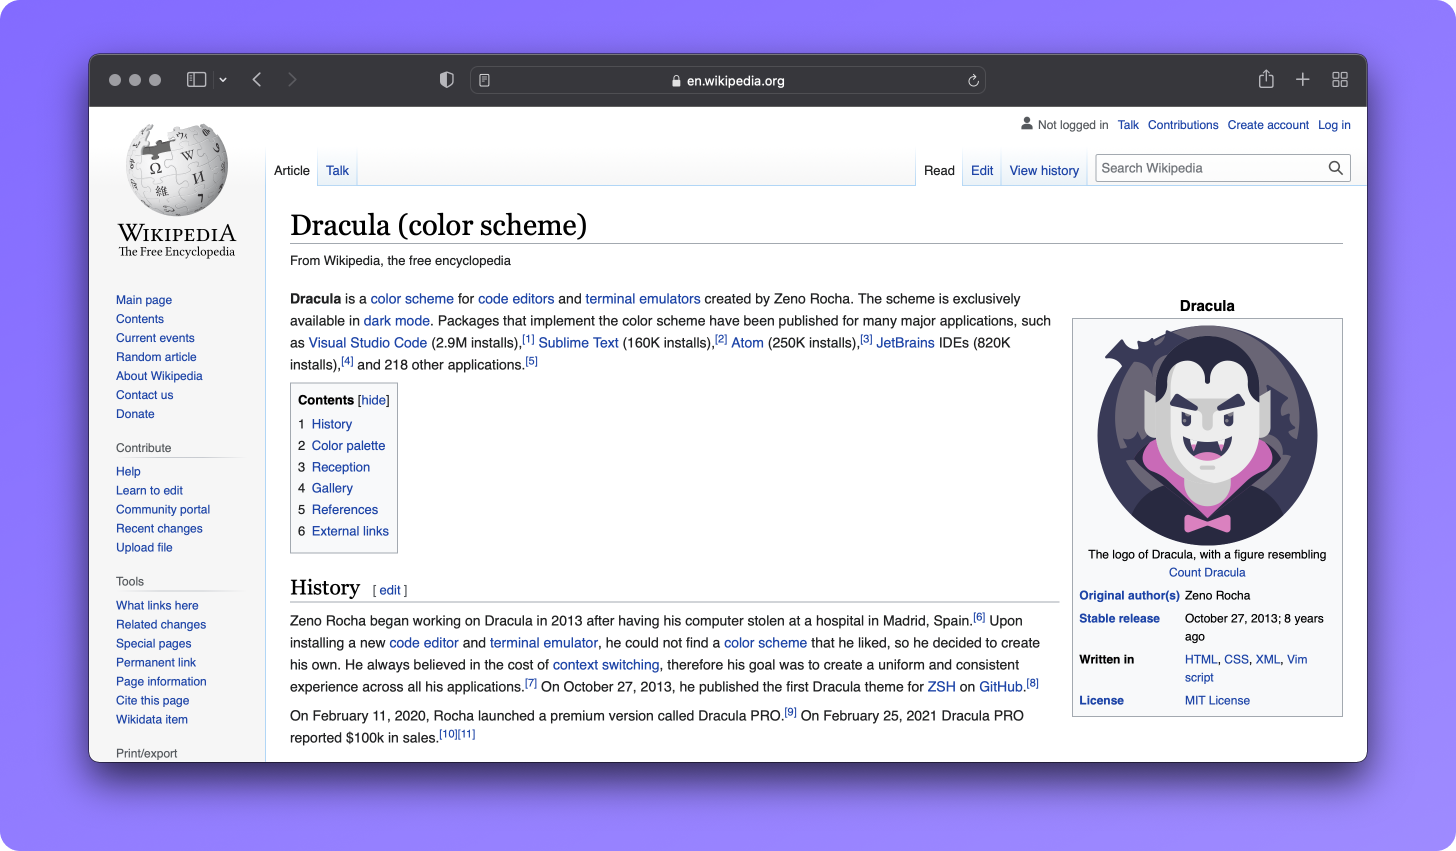 Dracula Wikipedia page